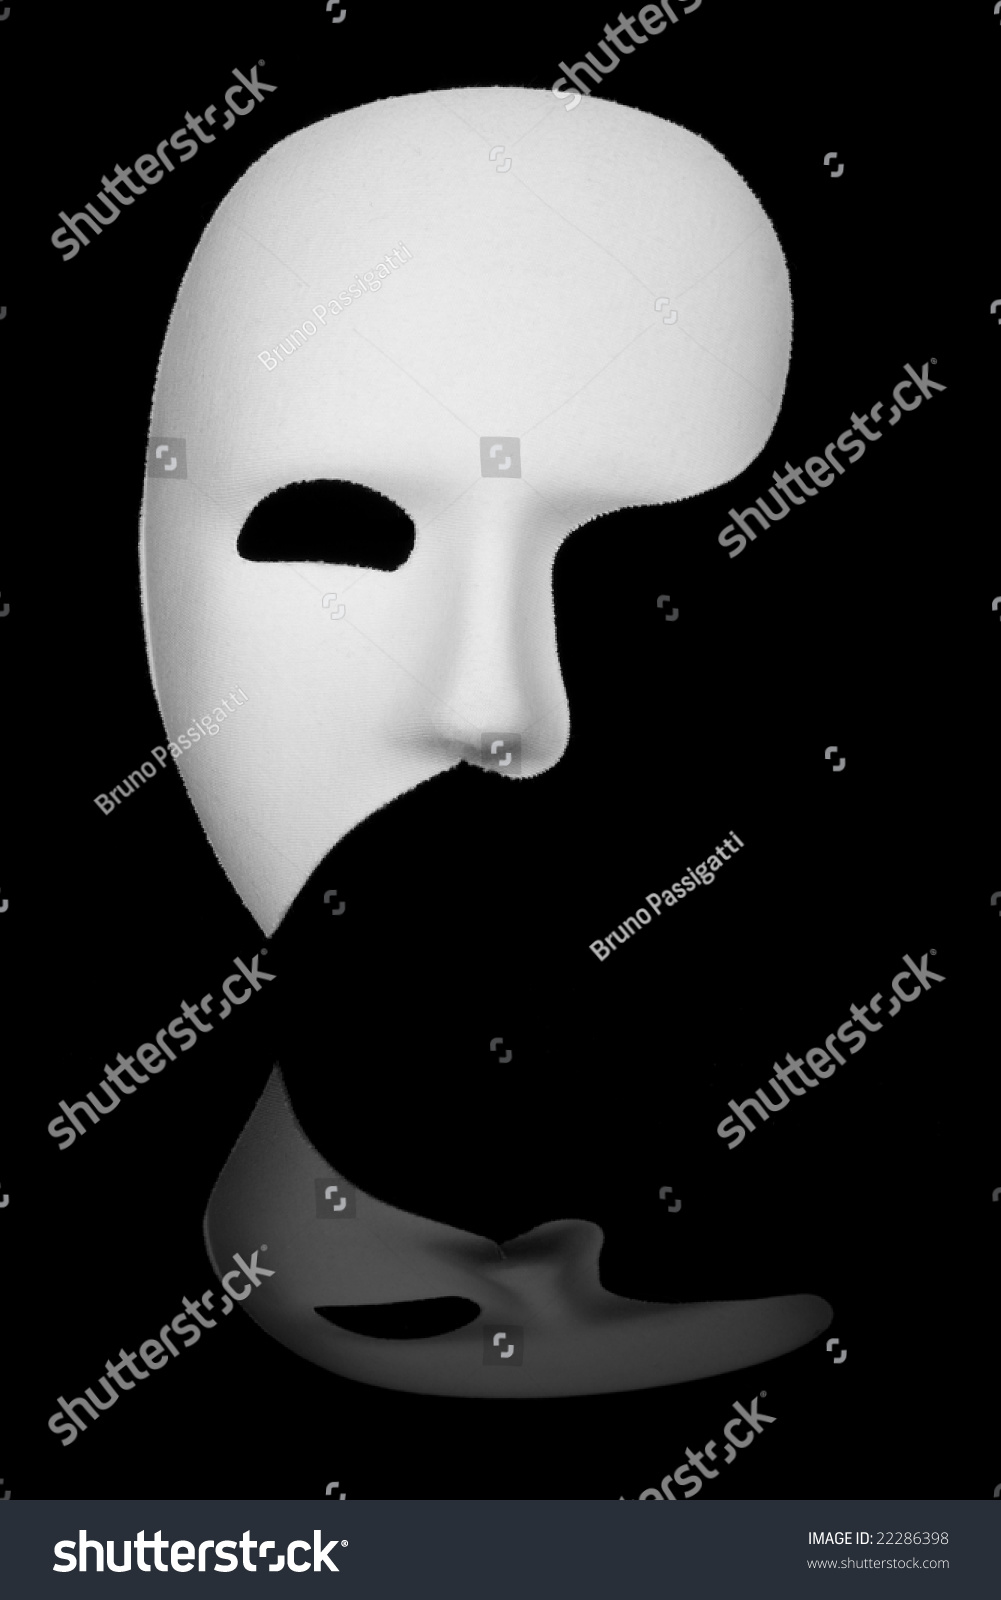 White Phantom Of The Opera Half Face Mask Isolated On Black Background ...